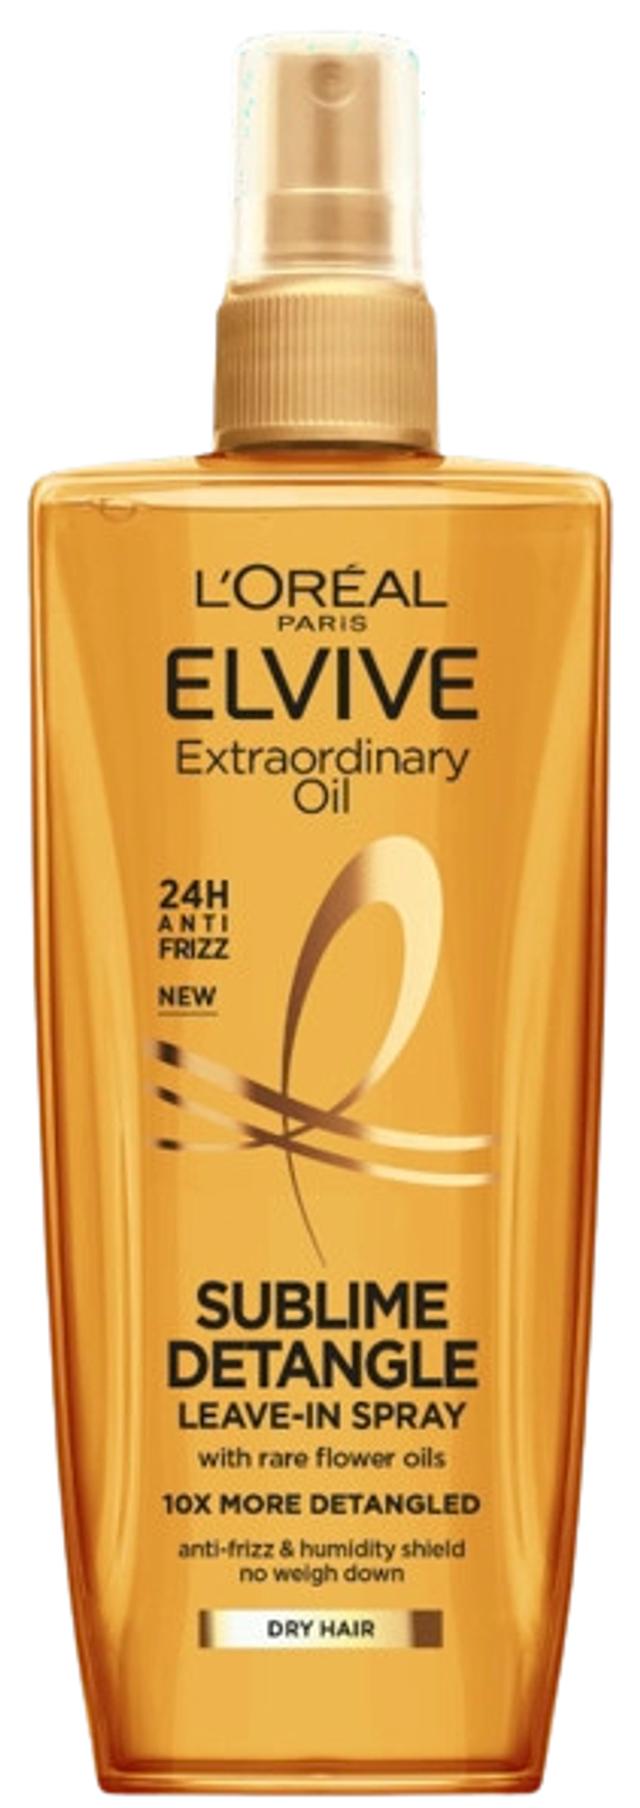 L'Oréal Paris Elvital 200ml Extraordinary Oil jätettävä hoitoainesuihke kuiville hiuksille 200ml